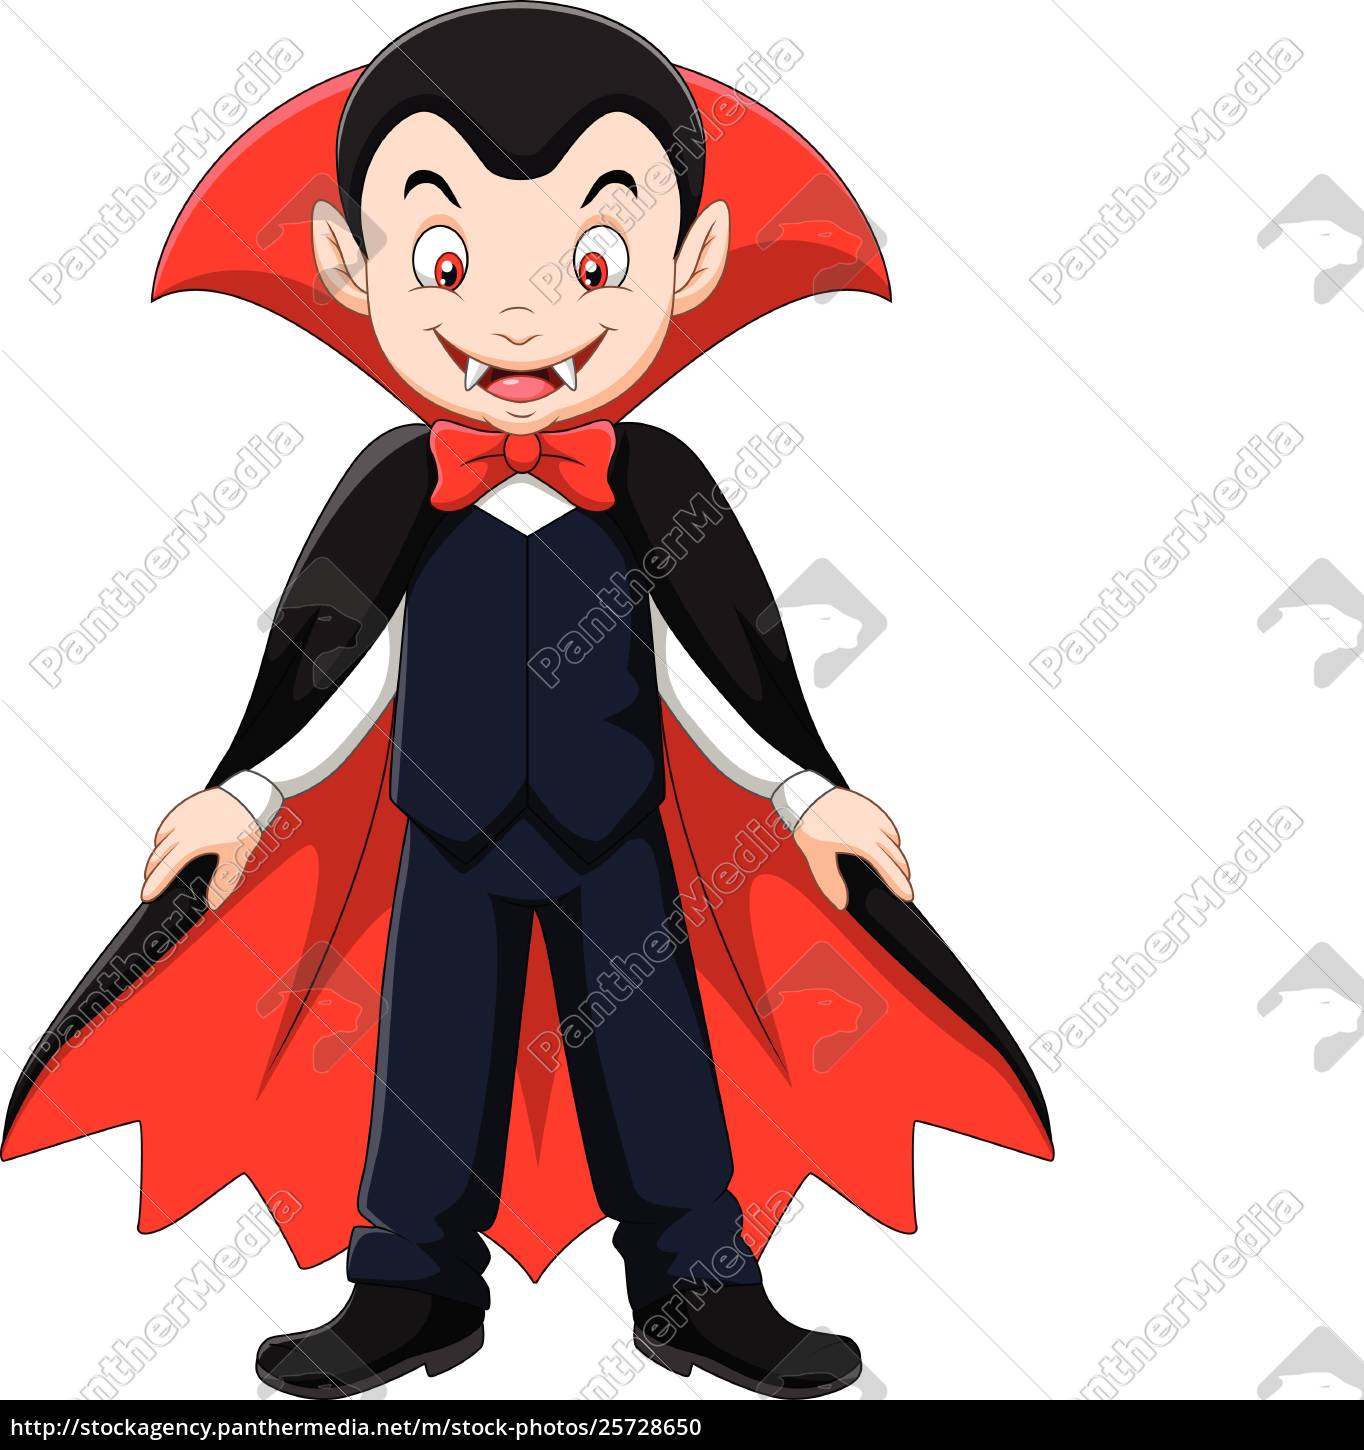 Mascote de vampiro dos desenhos animados, Vetor Premium